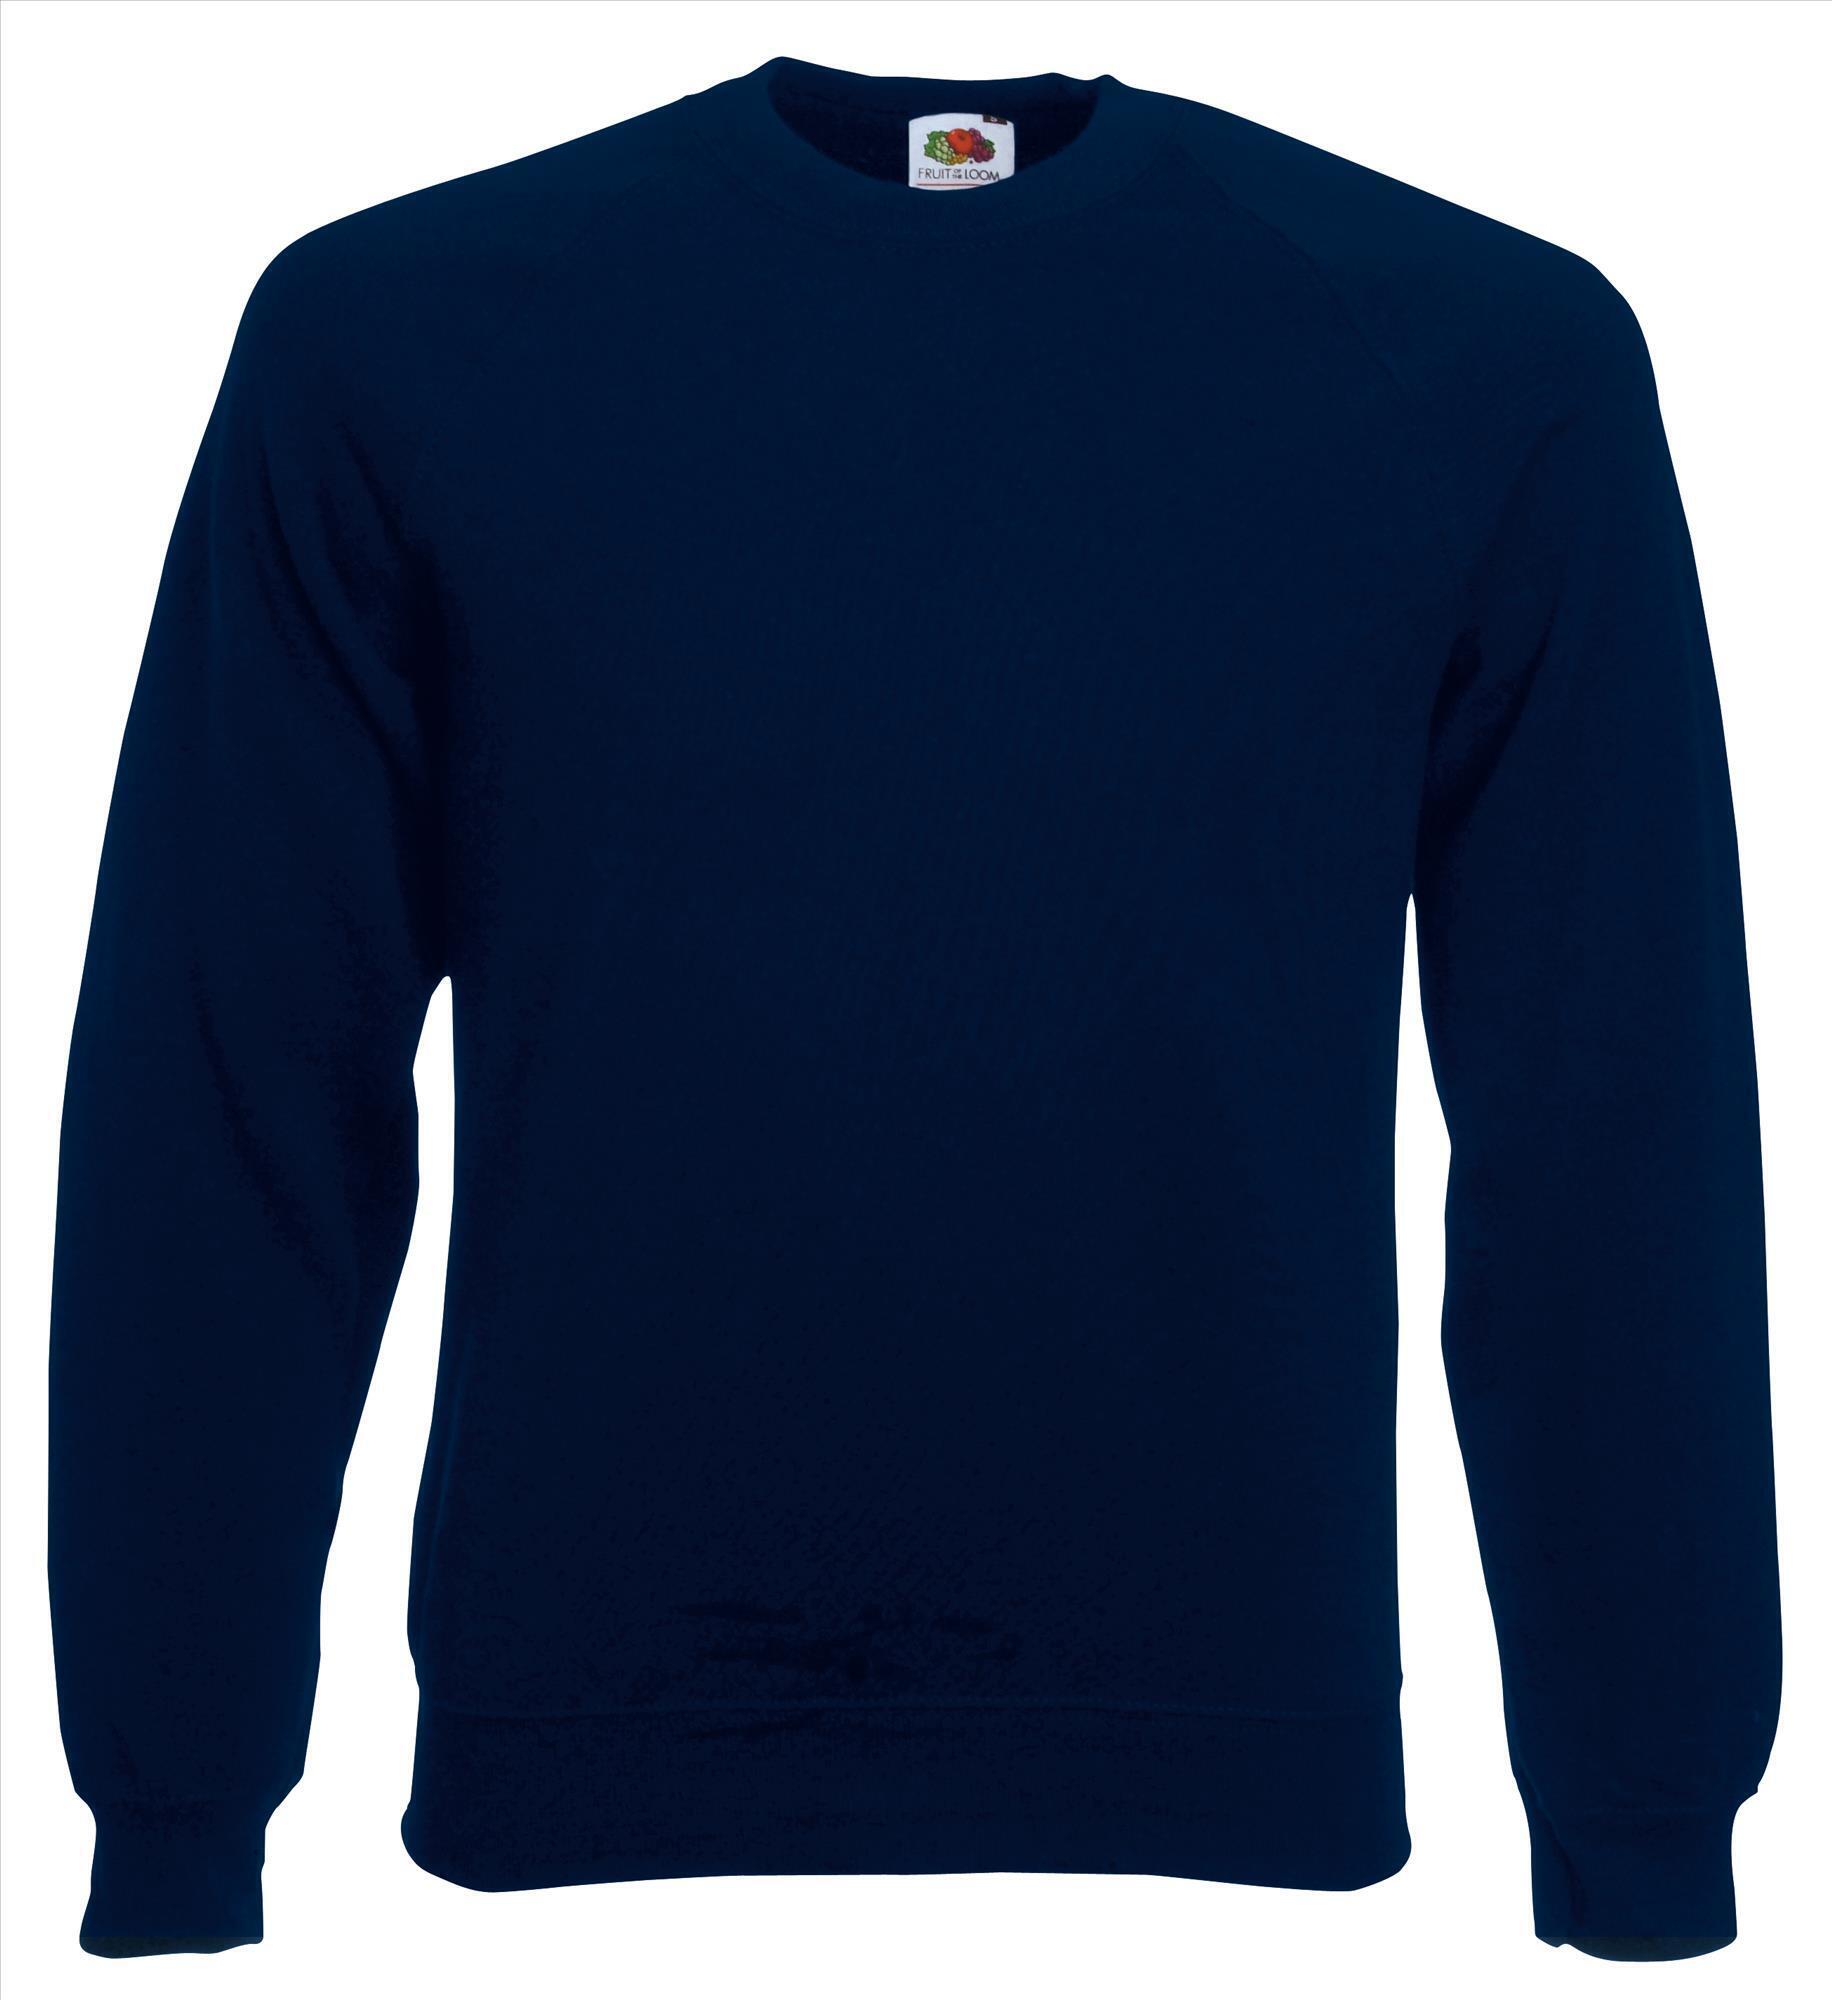 Sweater diep Marine blauw voor mannen bedrukbaar te personaliseren sweatshirts